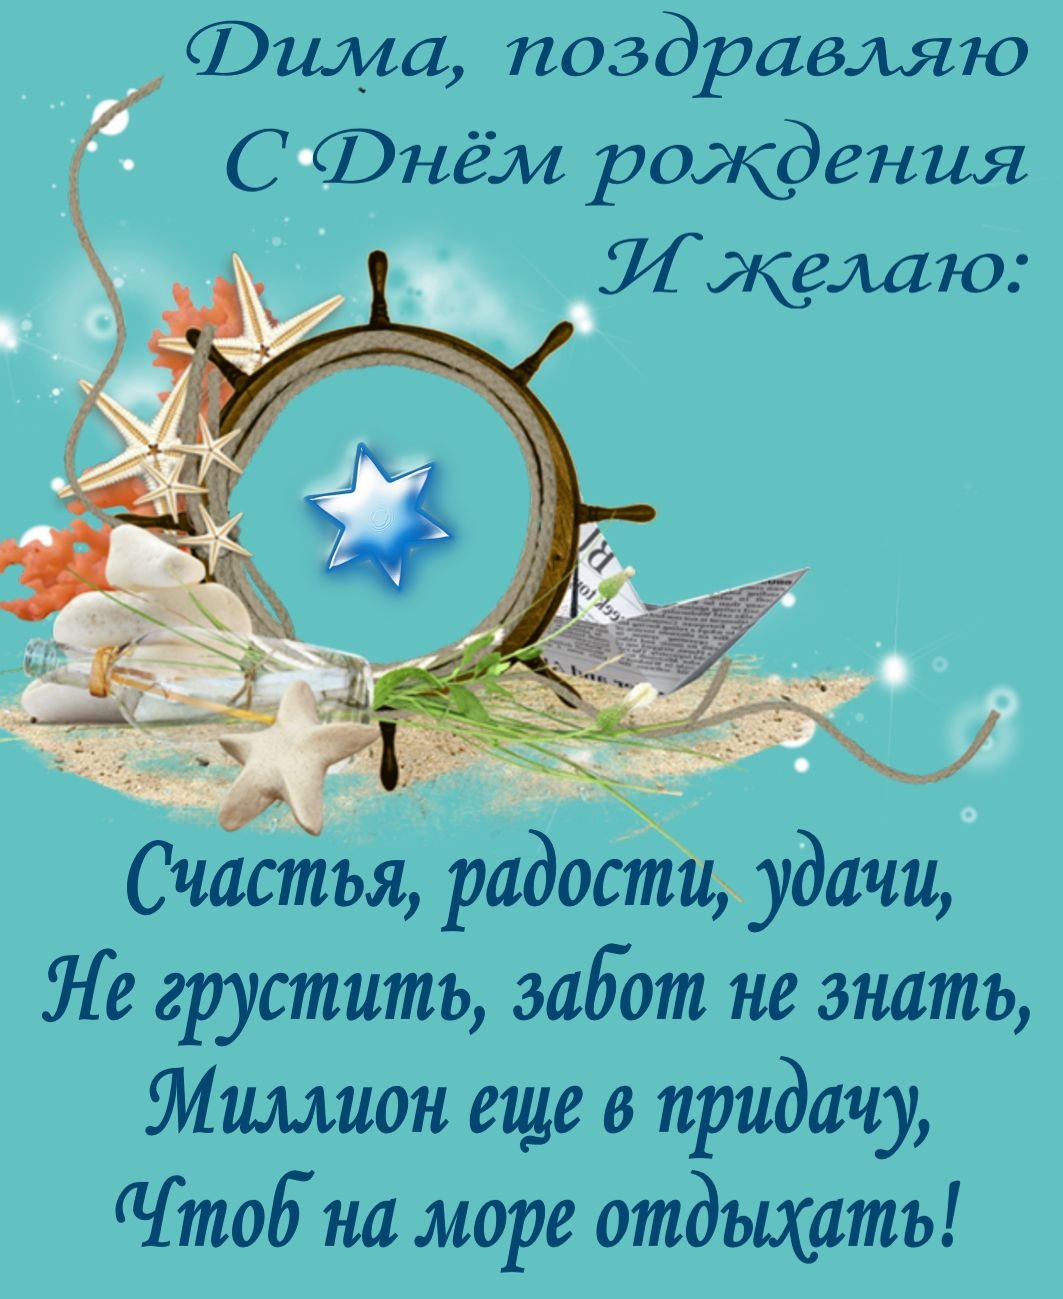 Поздравления с днем рождения Дмитрию своими словами в прозе 💐 – бесплатные пожелания на Pozdravim